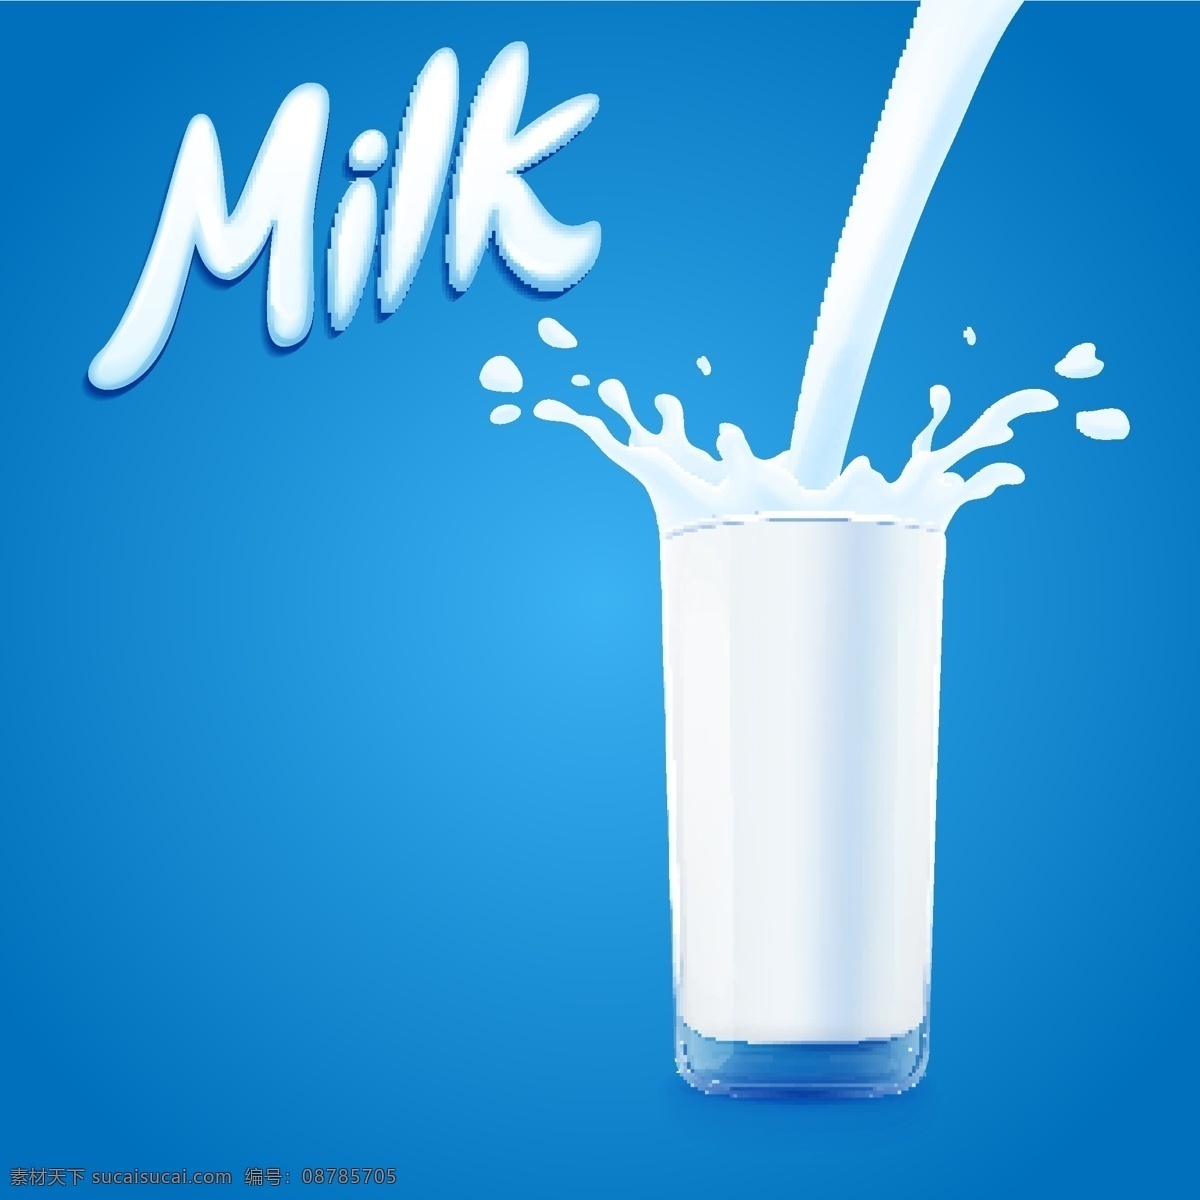 飞溅的牛奶 牛奶 奶花 倒牛奶 乳制品 农场 鲜奶 牛奶标签 牛奶标志 奶制品标志 牛奶logo 奶制品 logo 乳制品广告 milk 杯子 牛奶包装 包装设计